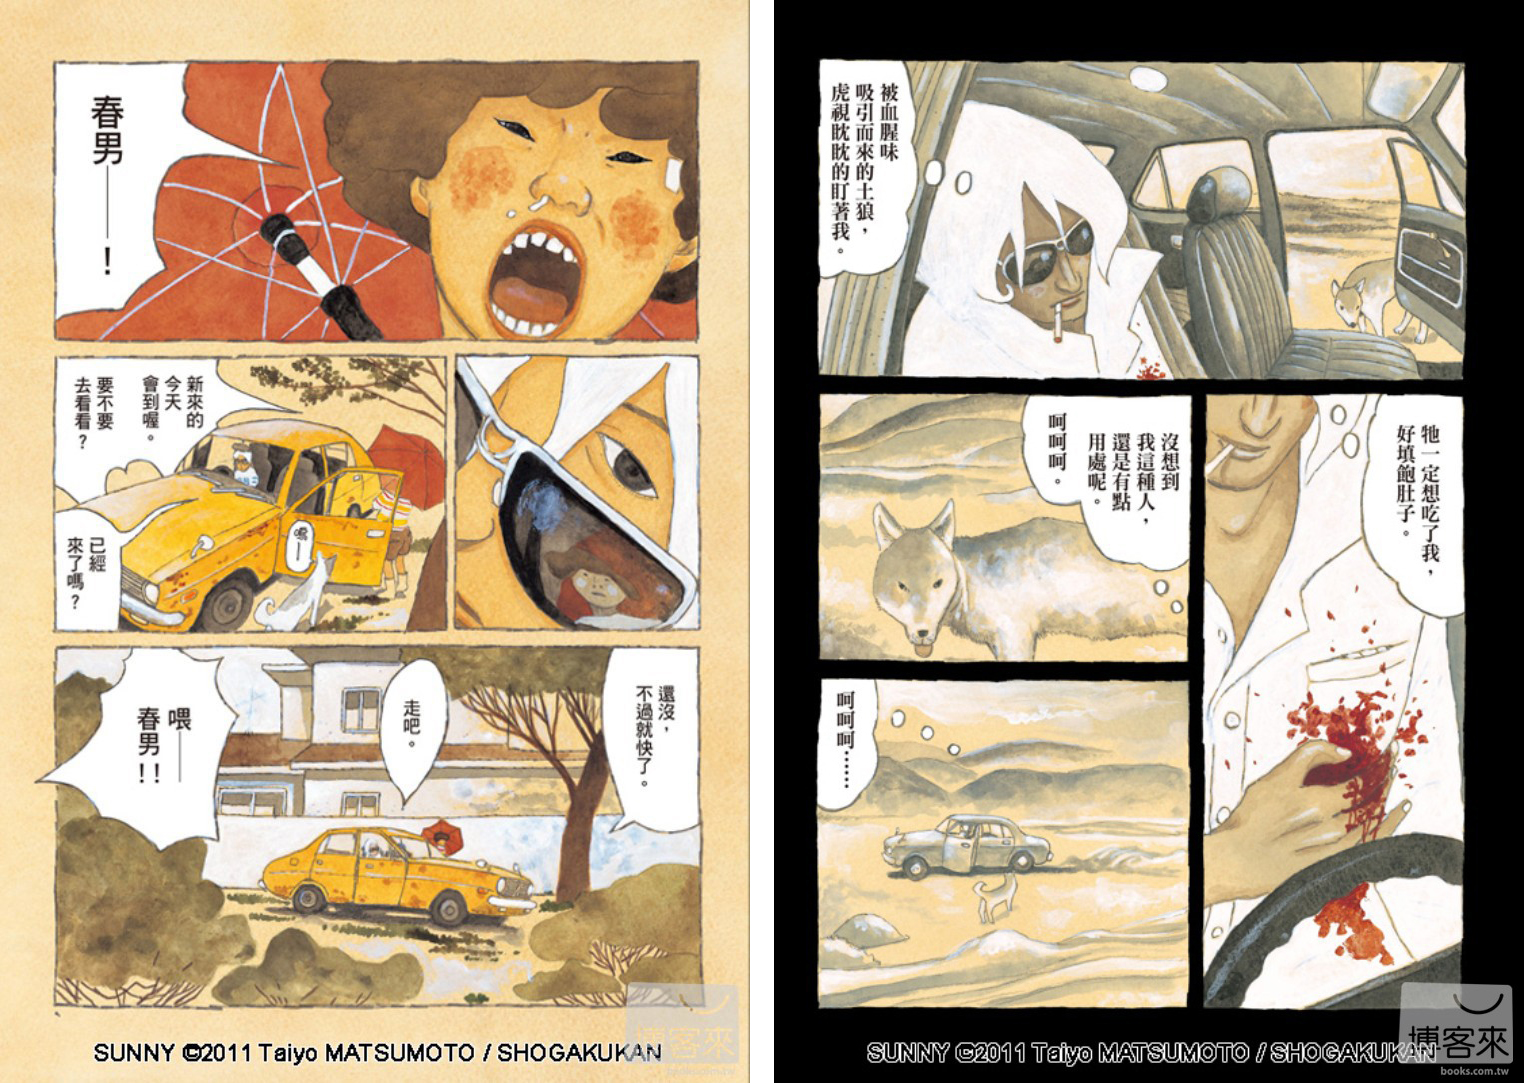 用孩子氣的畫筆向世界拋出銳利疑問 專訪日本漫畫大師松本大洋 本月大人物 博客來okapi